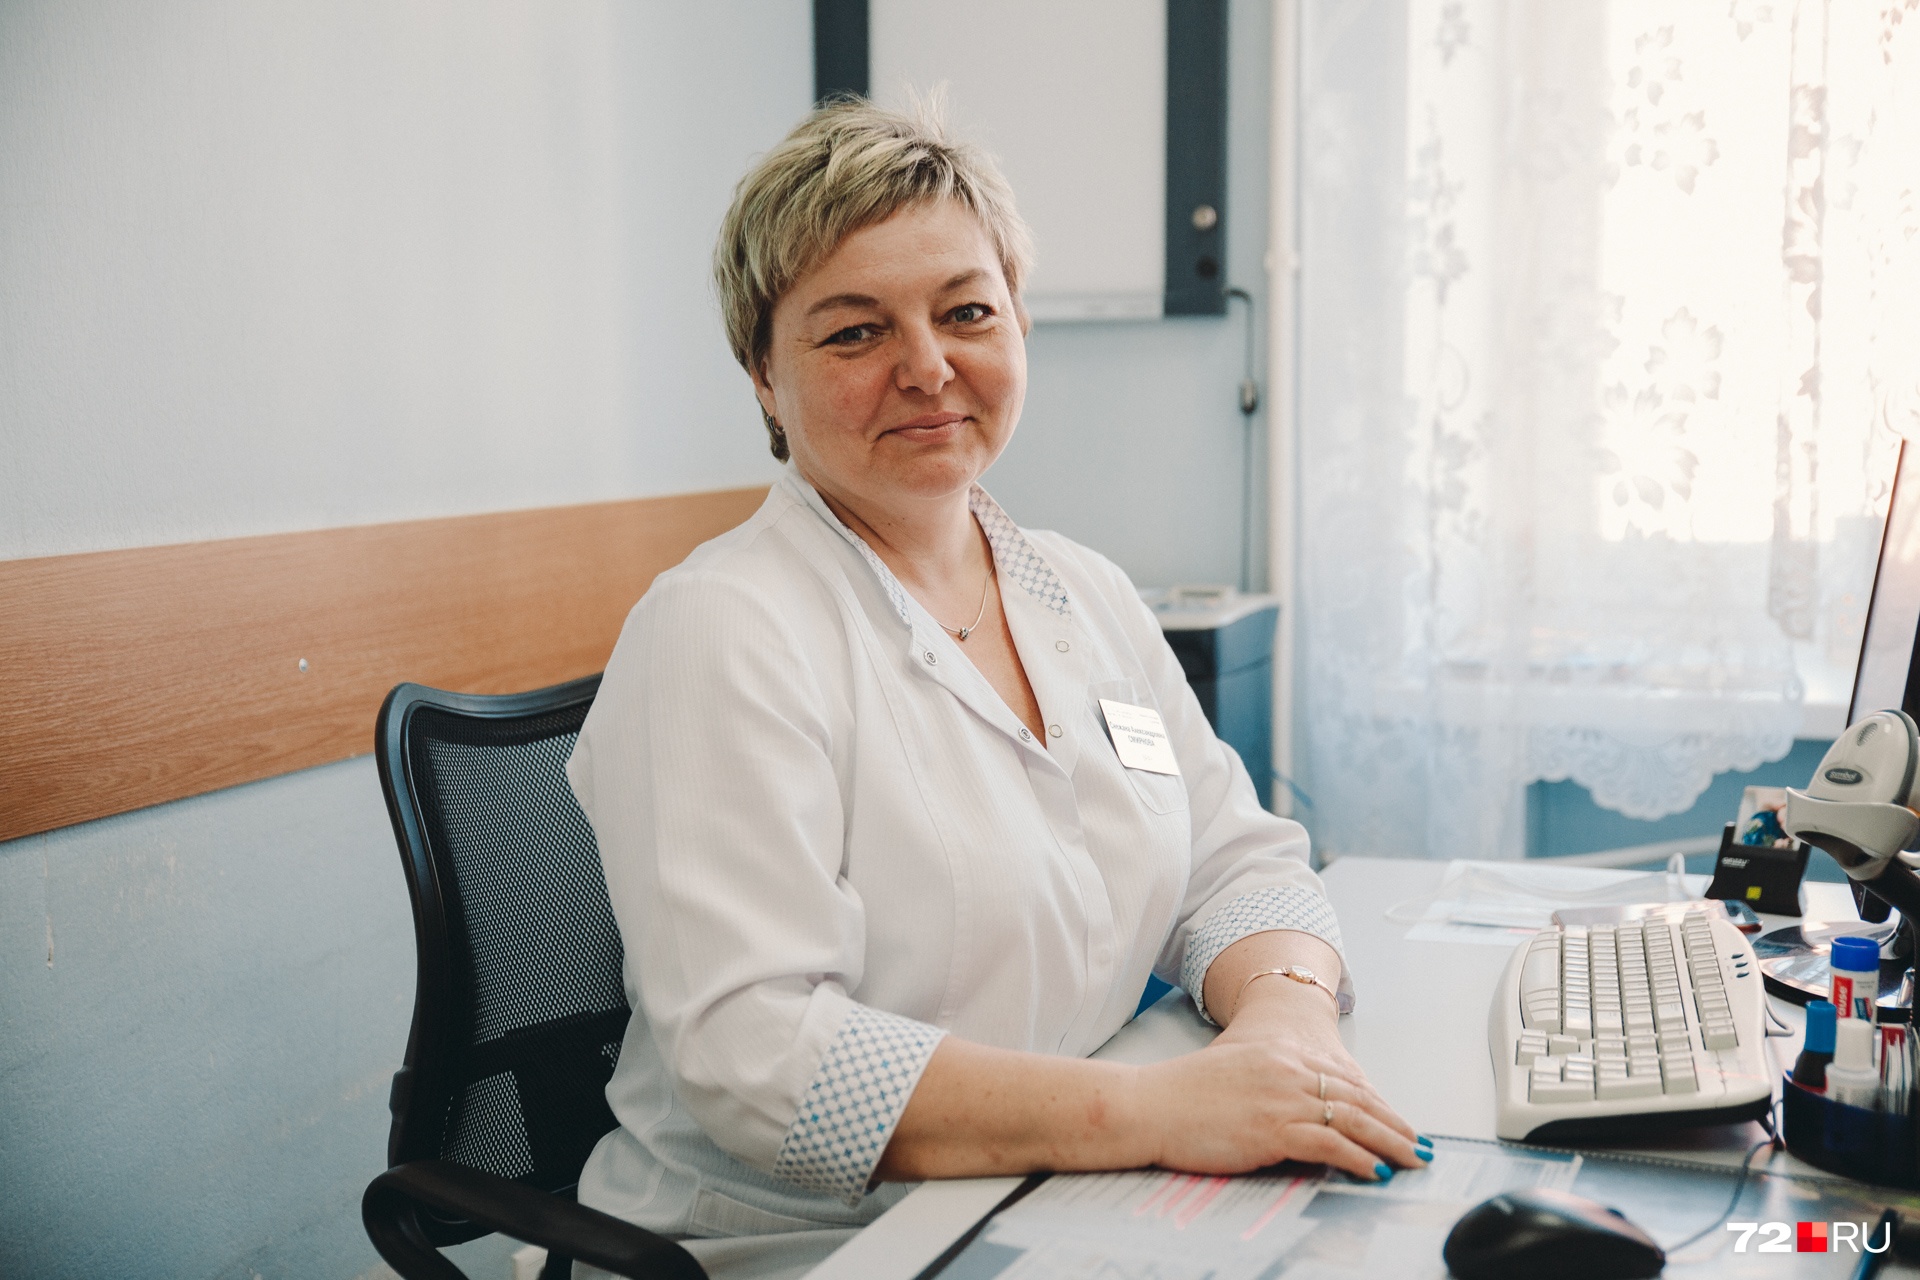 Врач-невролог Снежана Смирнова полагается на опыт лечения других болезней при восстановлении пациентов после COVID-19